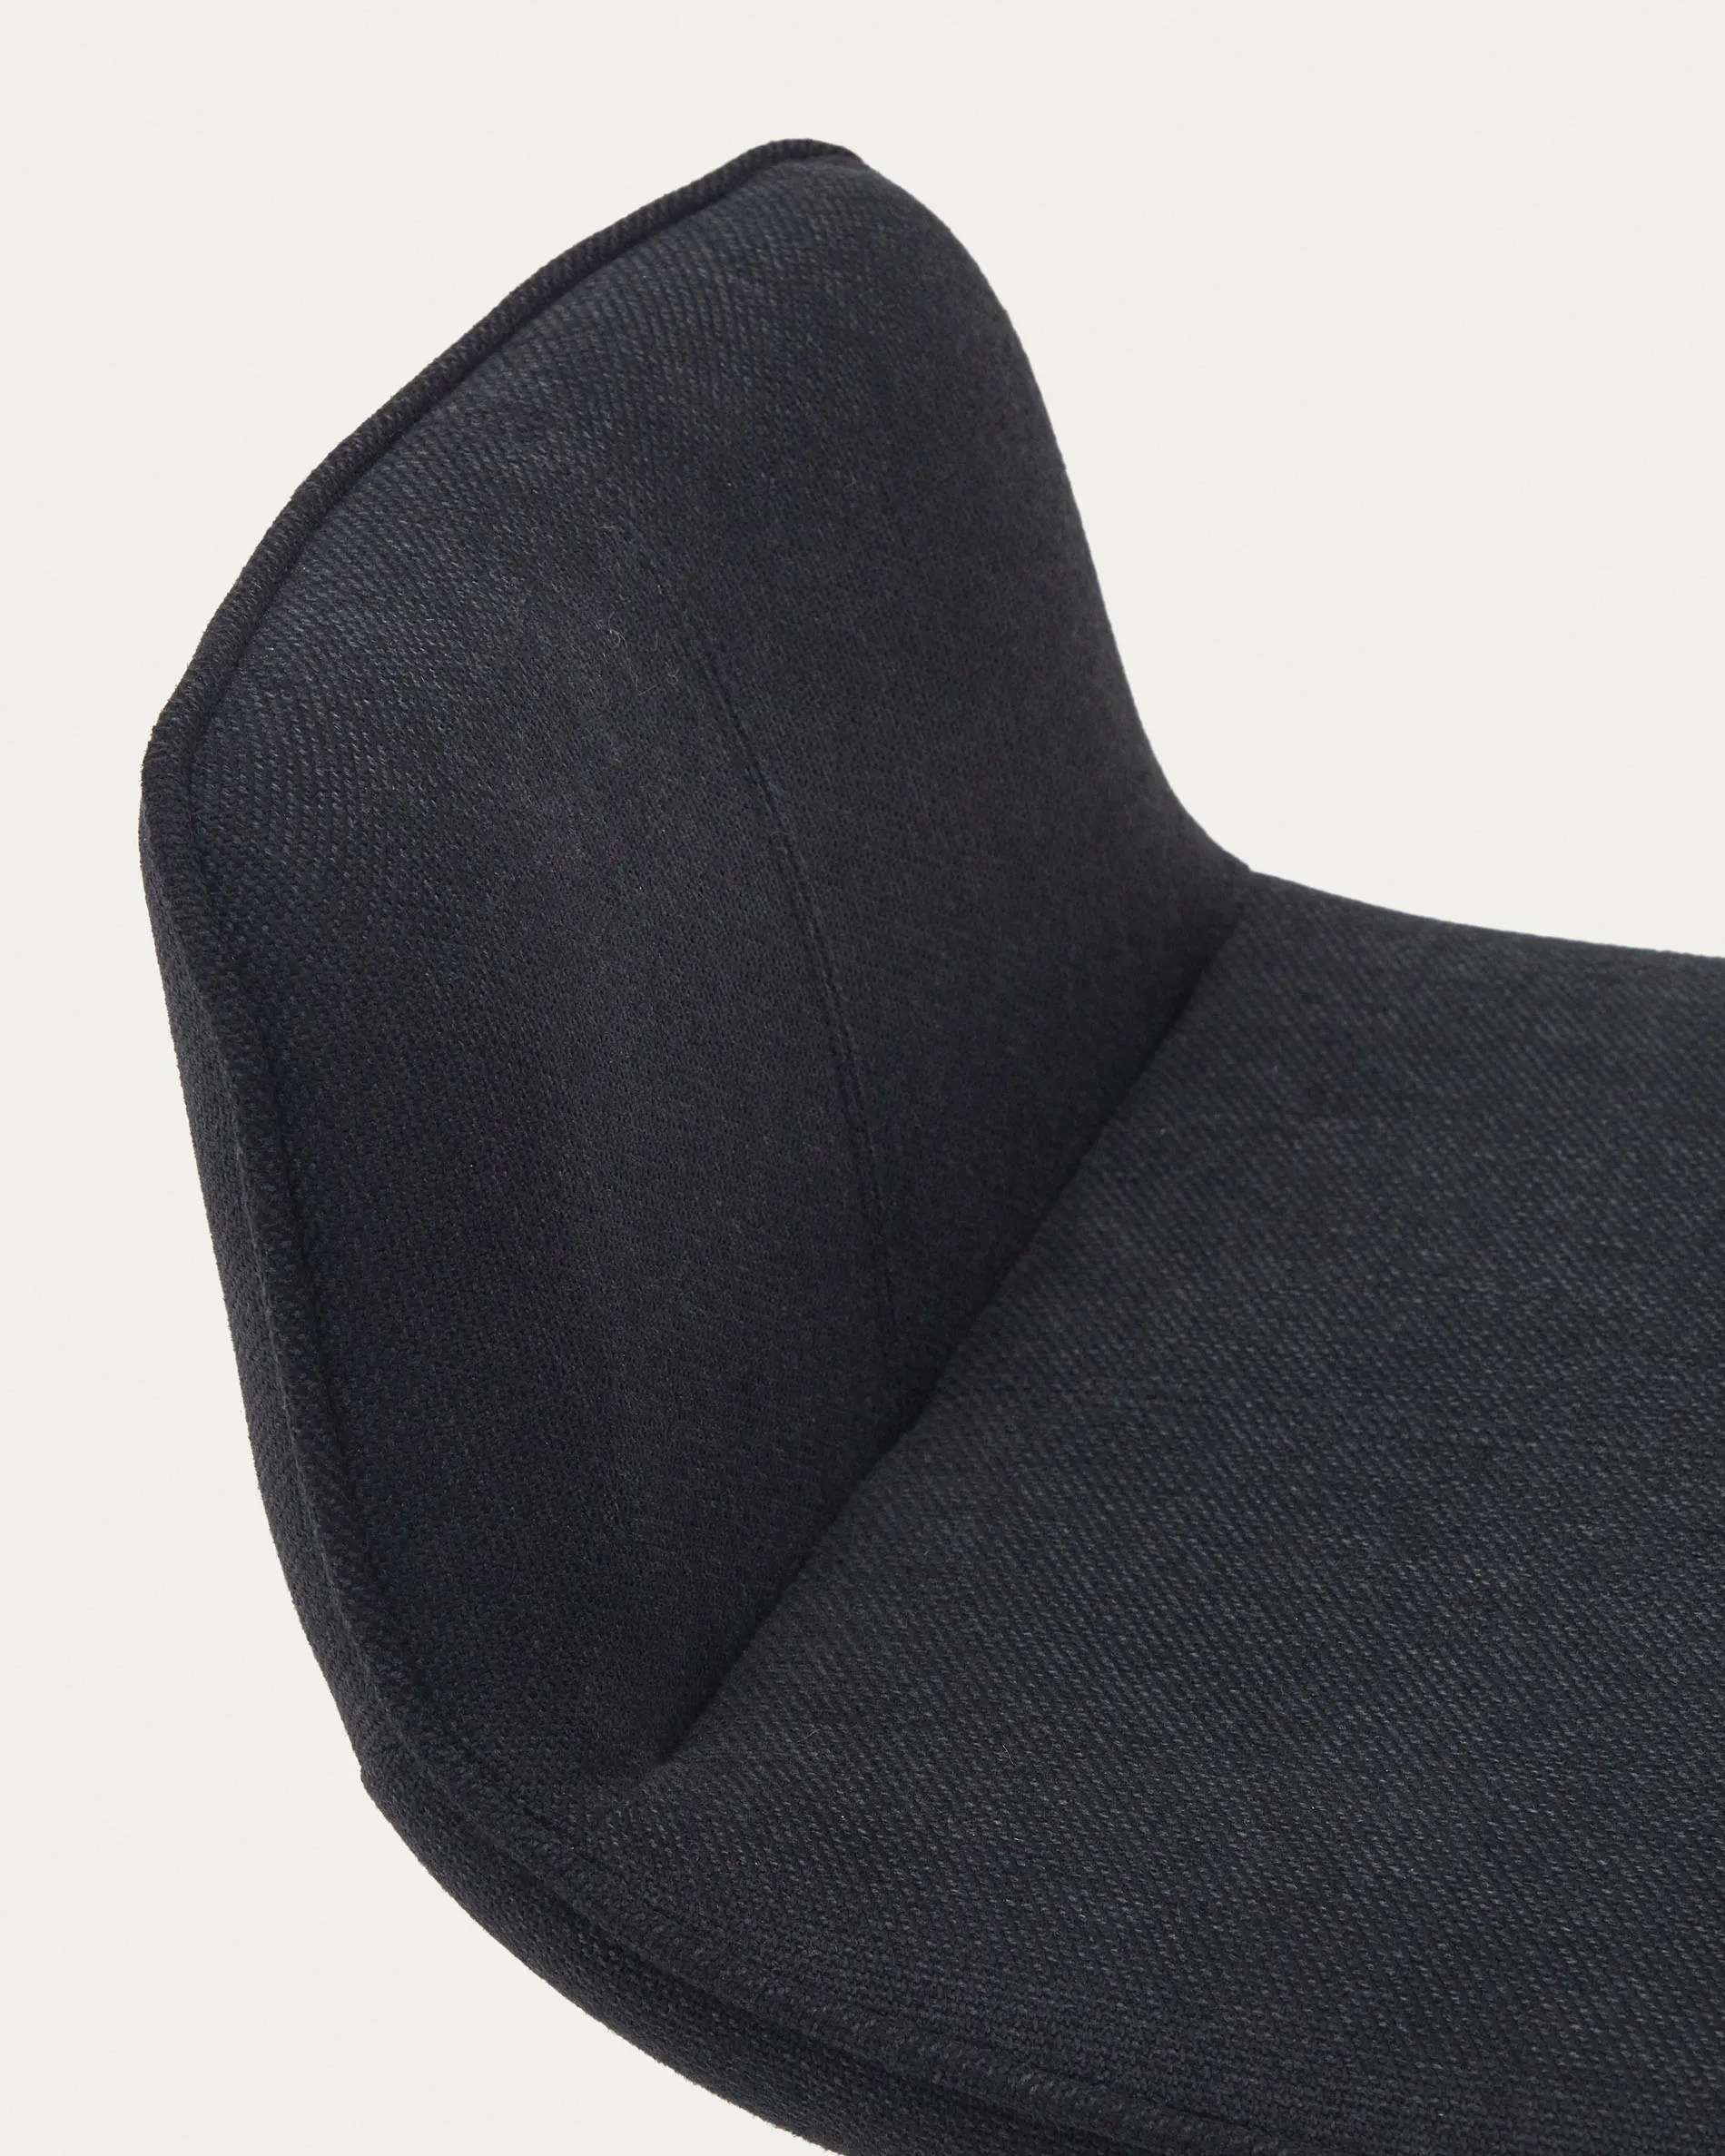 Барный стул La Forma Zenda черный шенилл и матовая черная сталь 81-102 см 166649